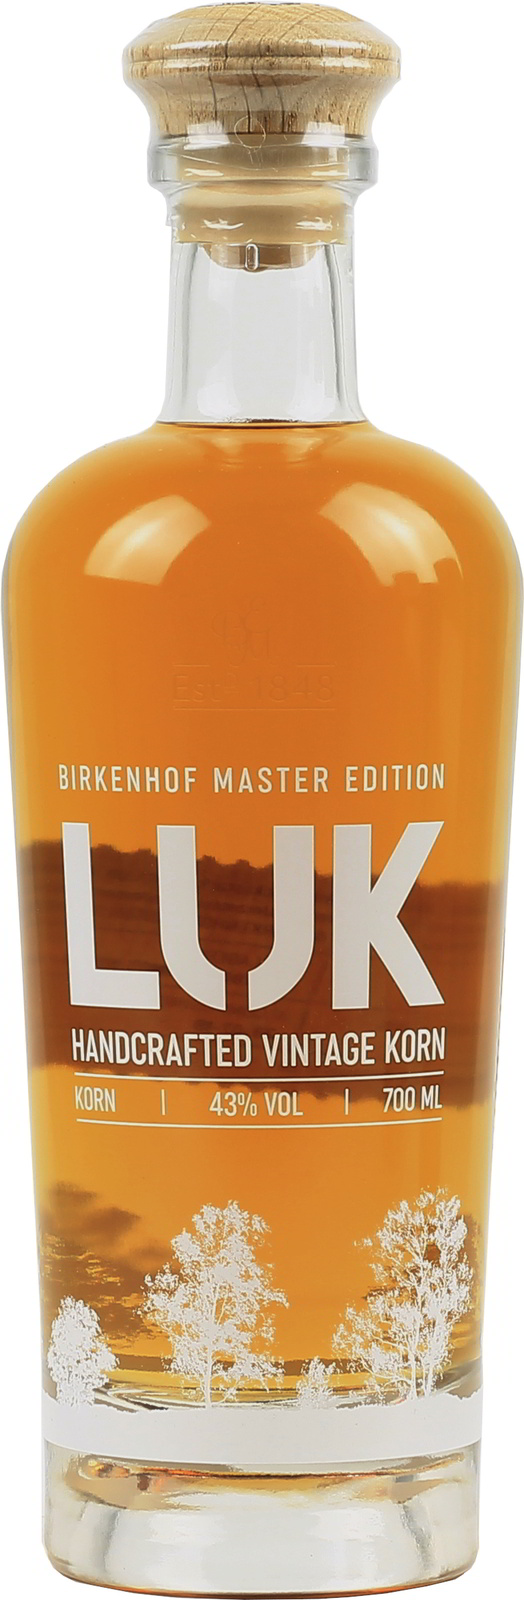 Birkenhof LUK Handcrafted exquisit Korn, Vintage